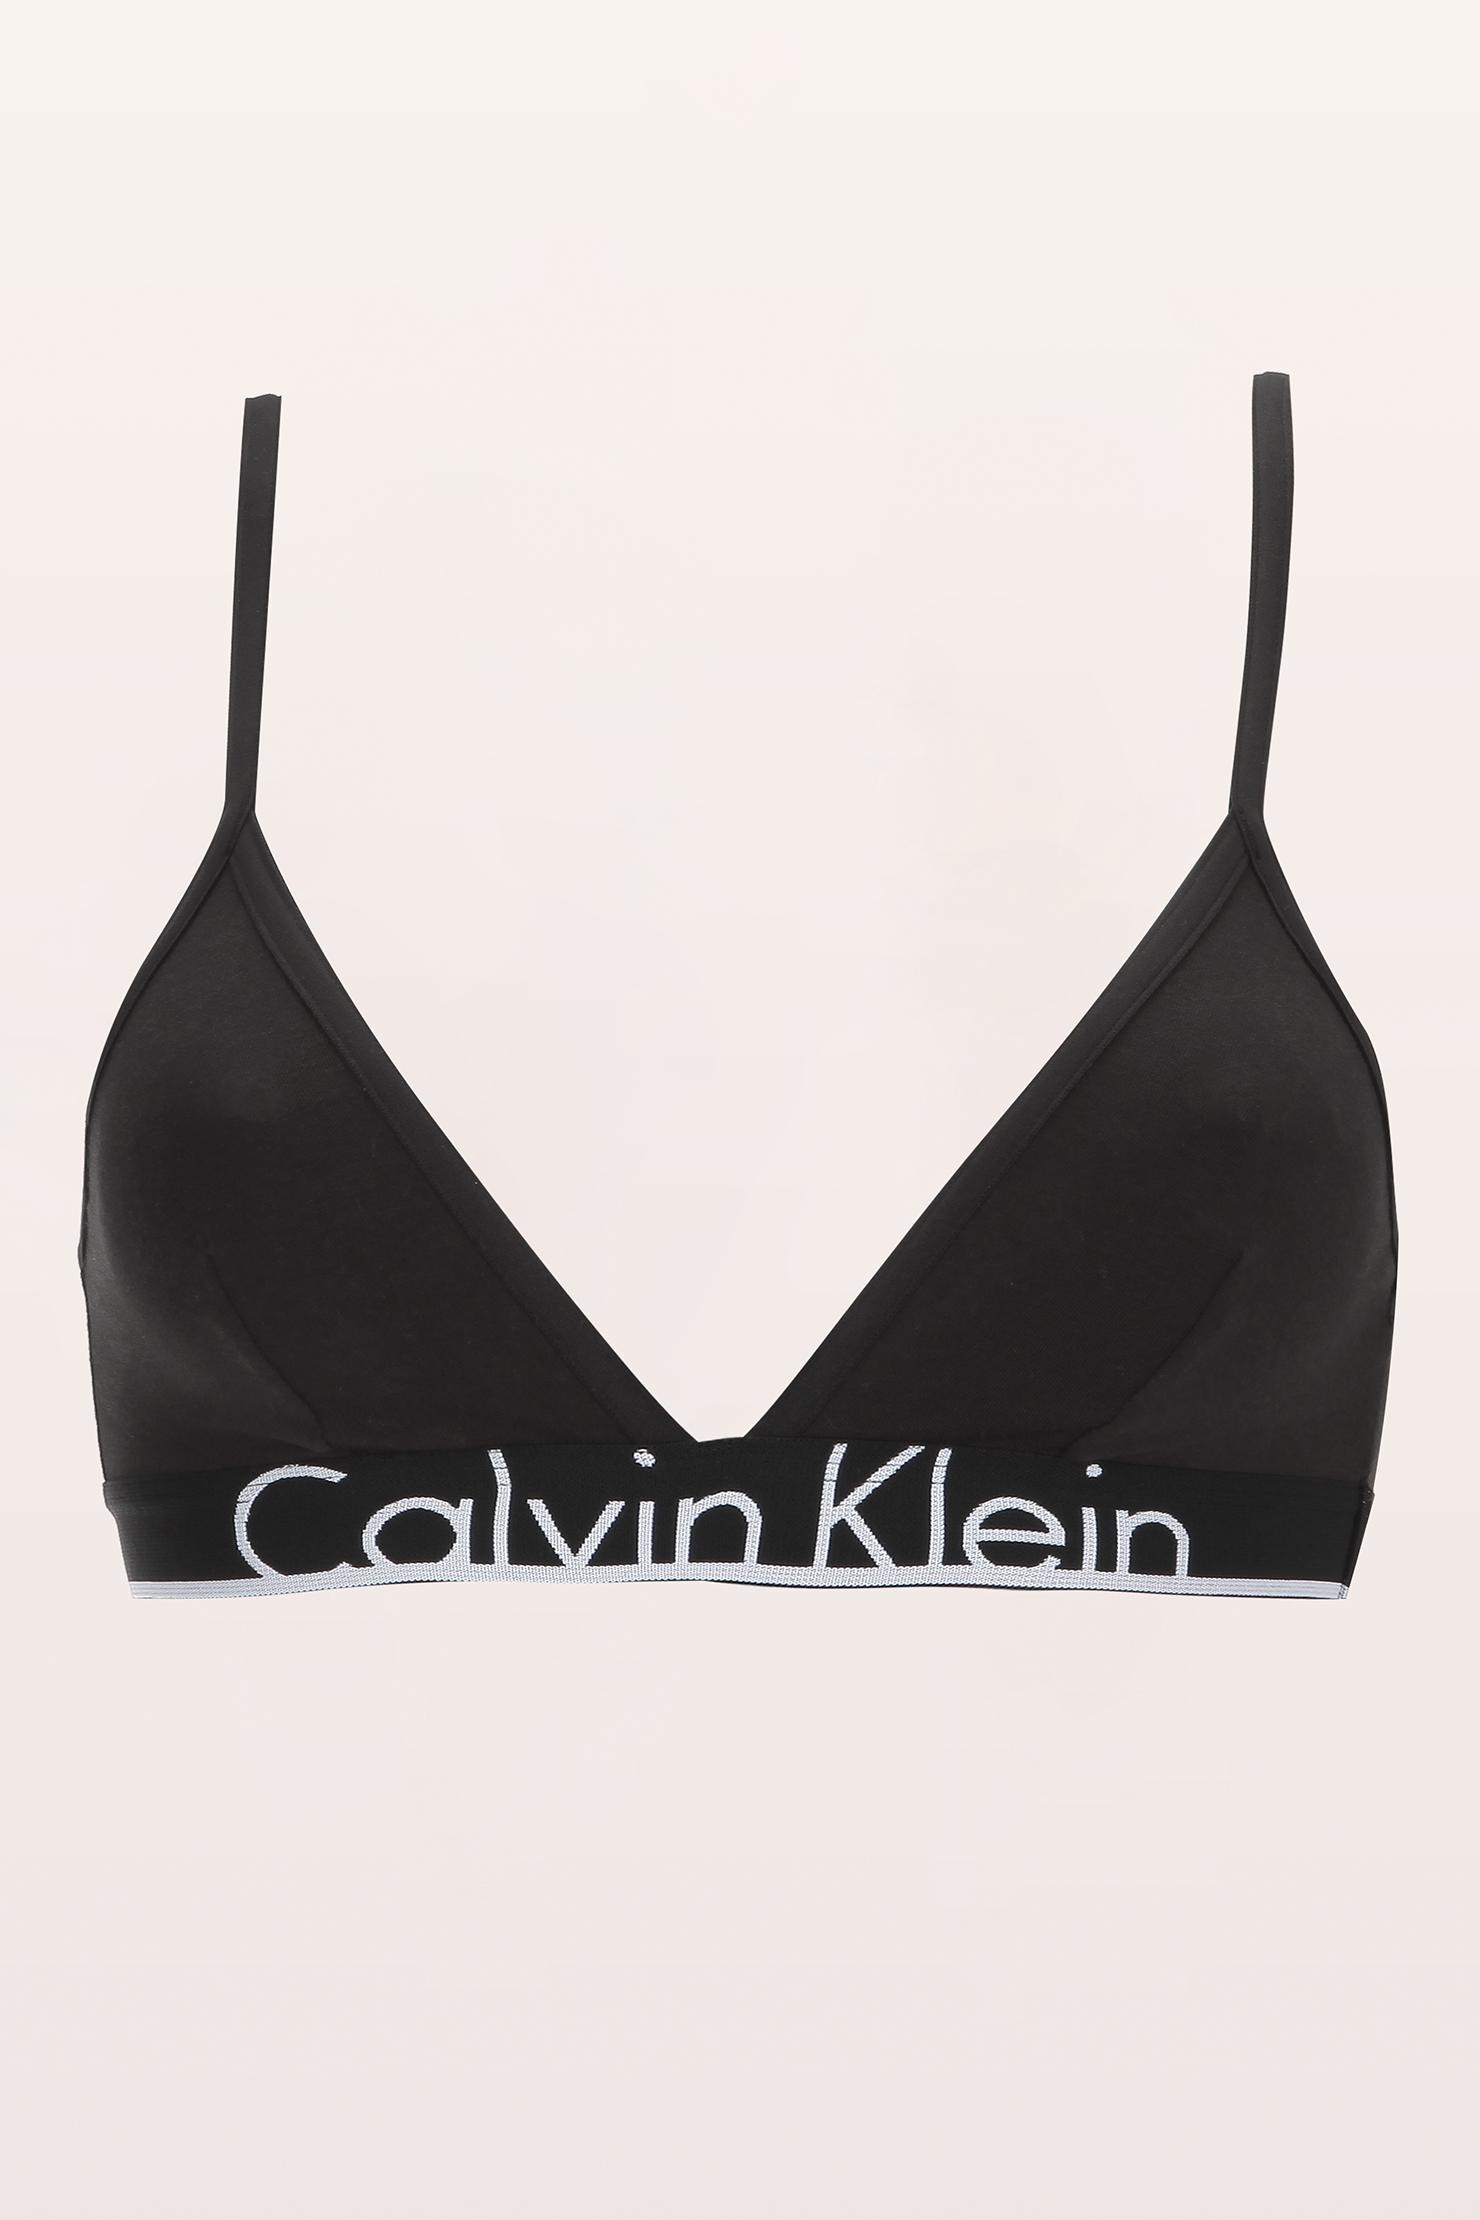 Lyst - Calvin Klein Bras in Black